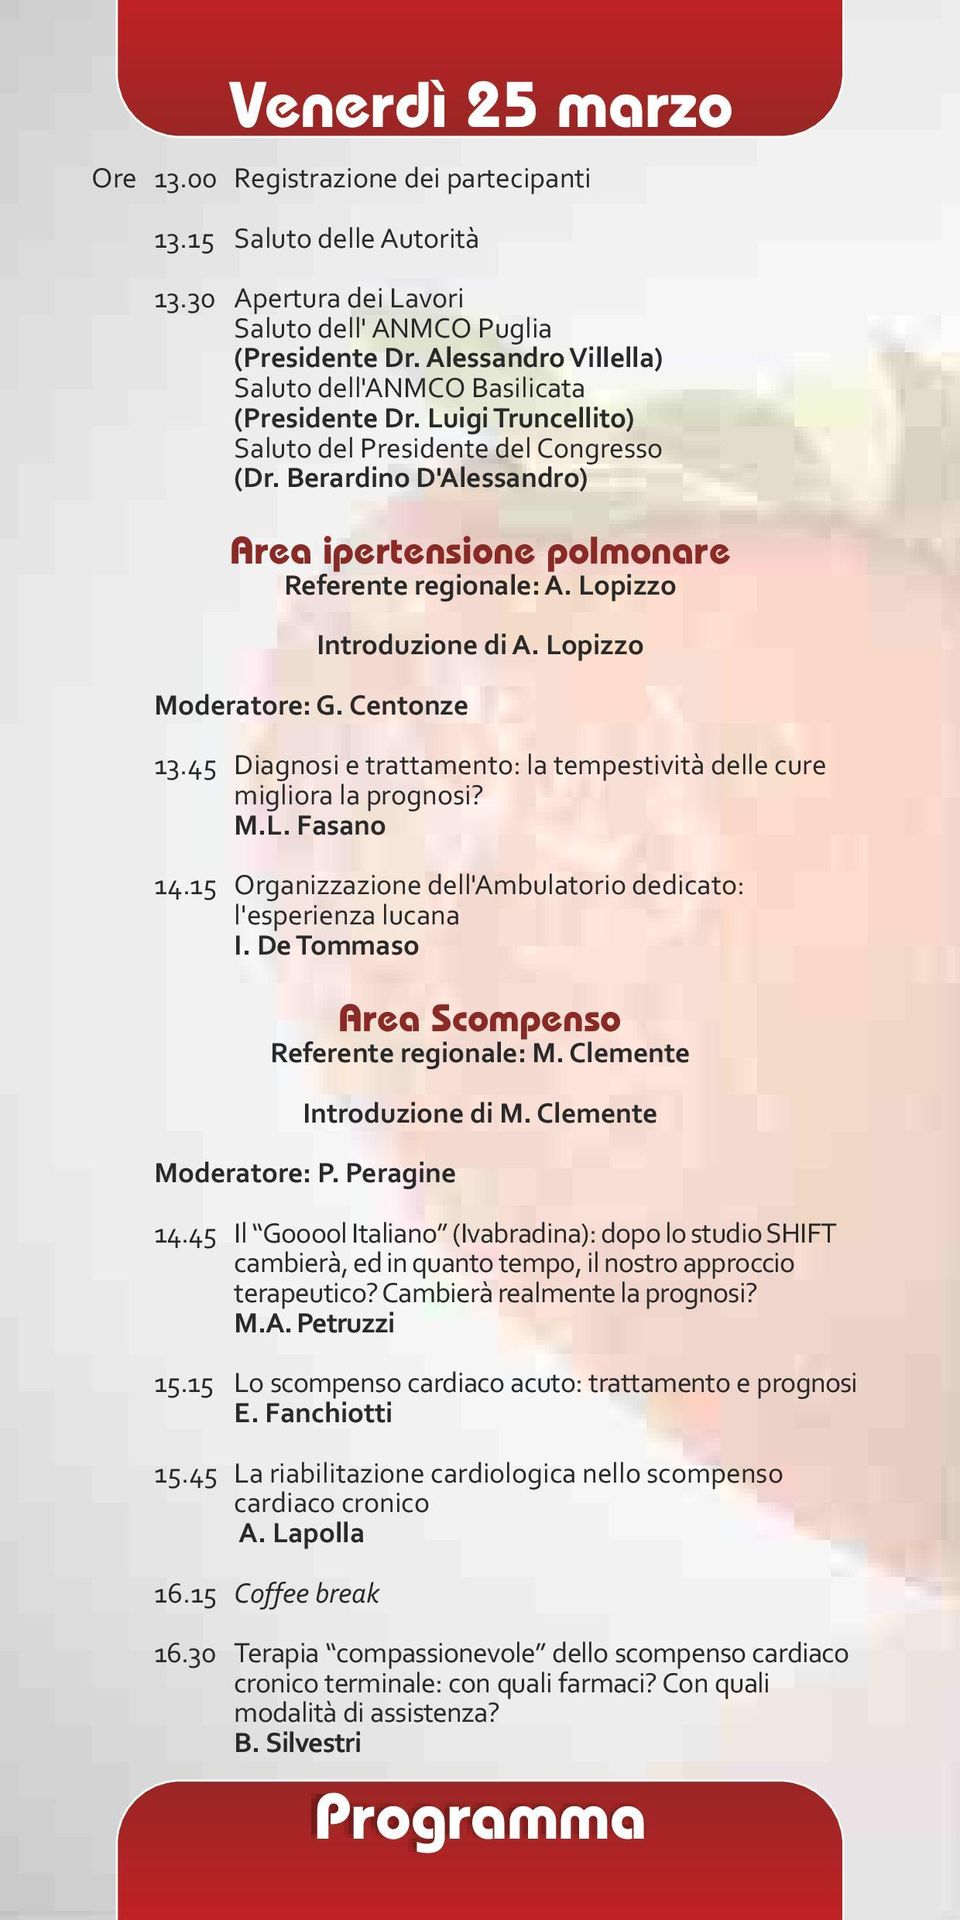 Berardino D'Alessandro) Area ipertensione polmonare Referente regionale: A. Lopizzo Moderatore: G. Centonze Introduzione di A. Lopizzo 13.